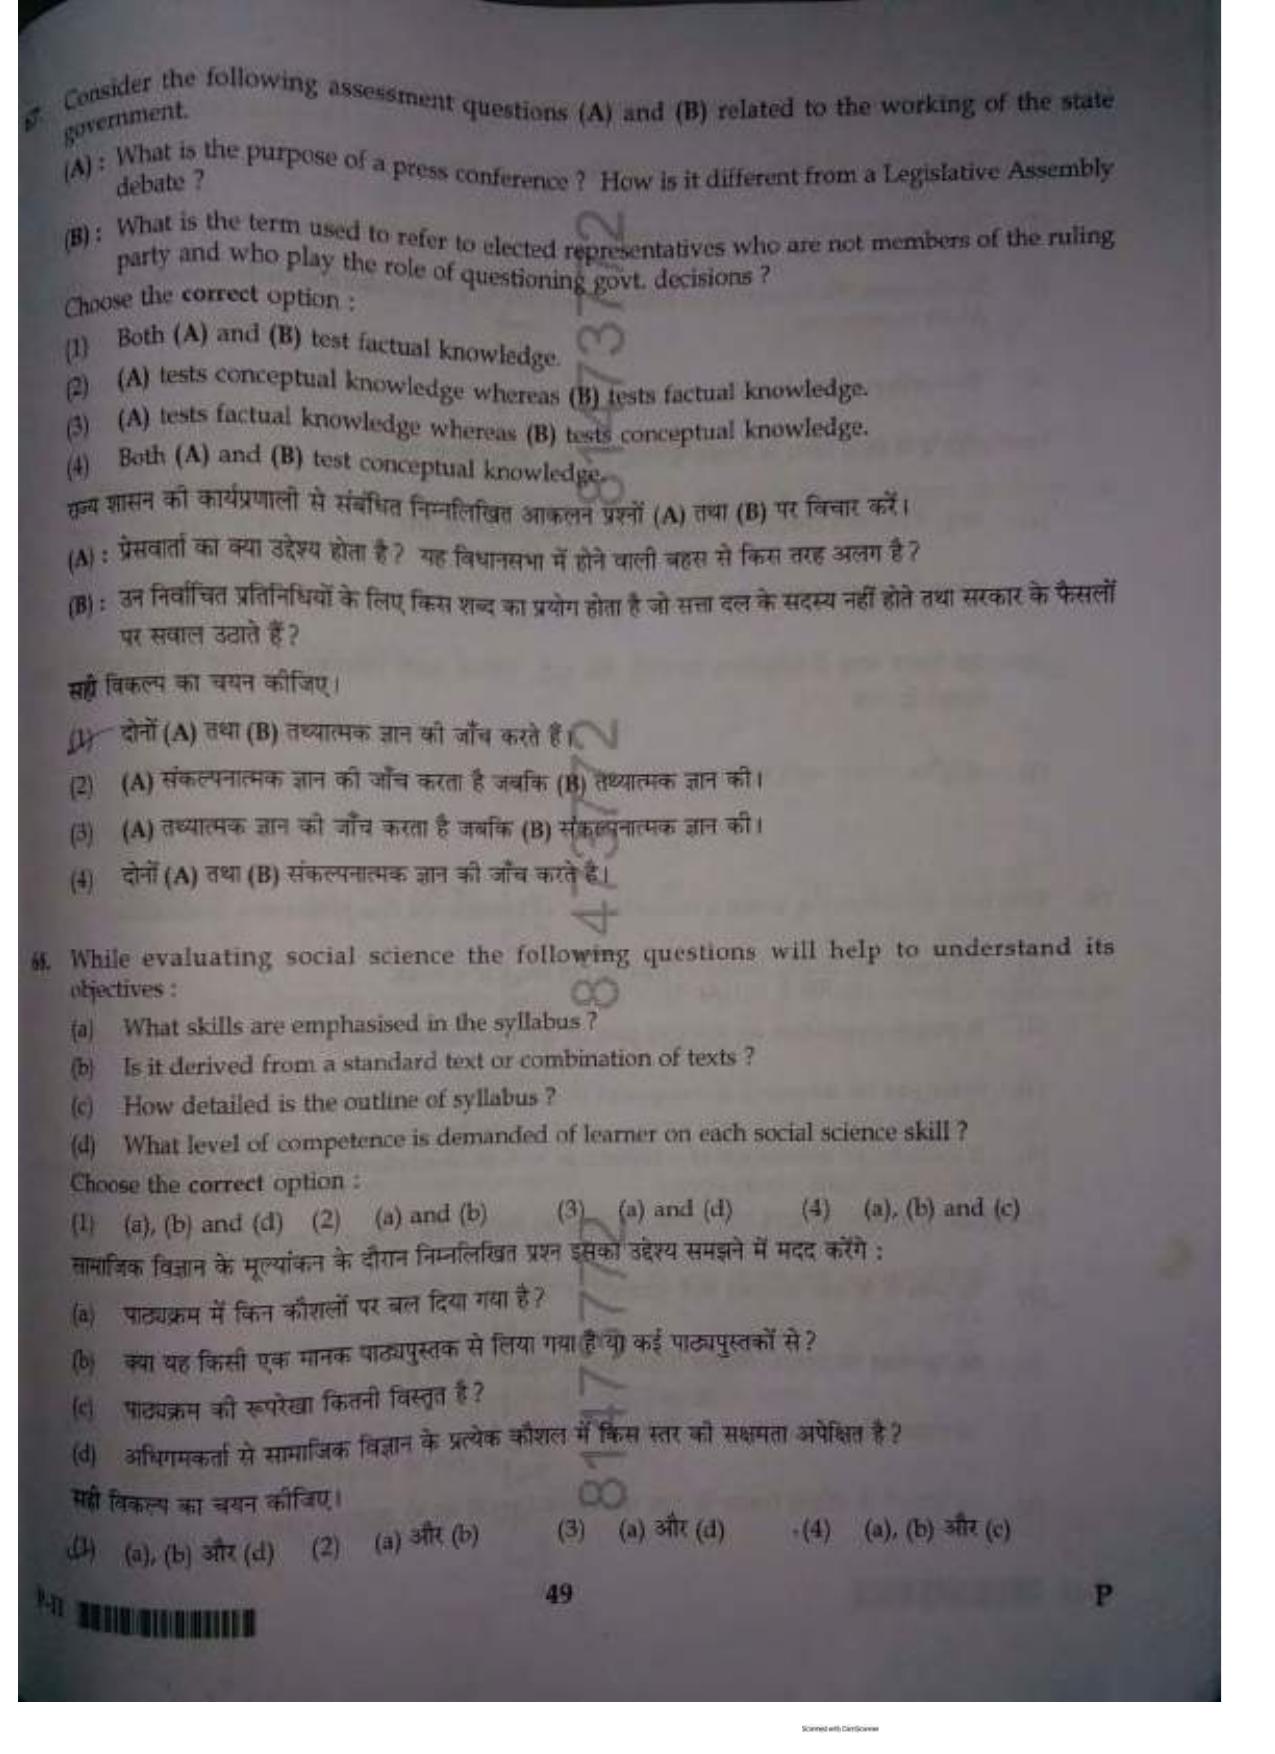 ctet paper 2 question paper SET P - Page 48